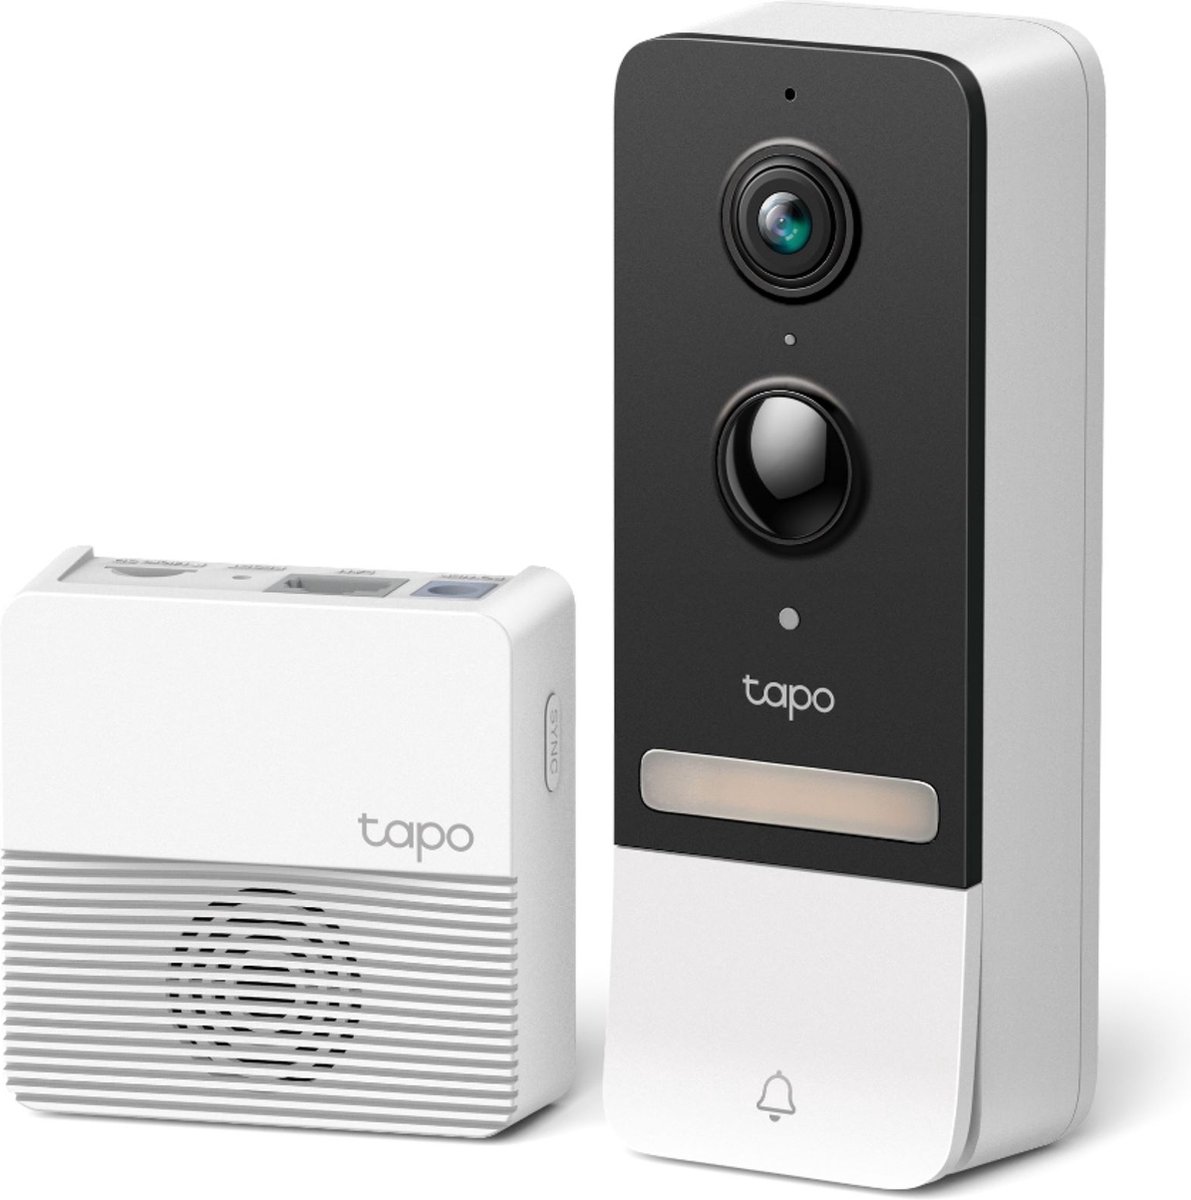 Test des TP-Link Tapo C420 : notre avis complet sur ces caméras